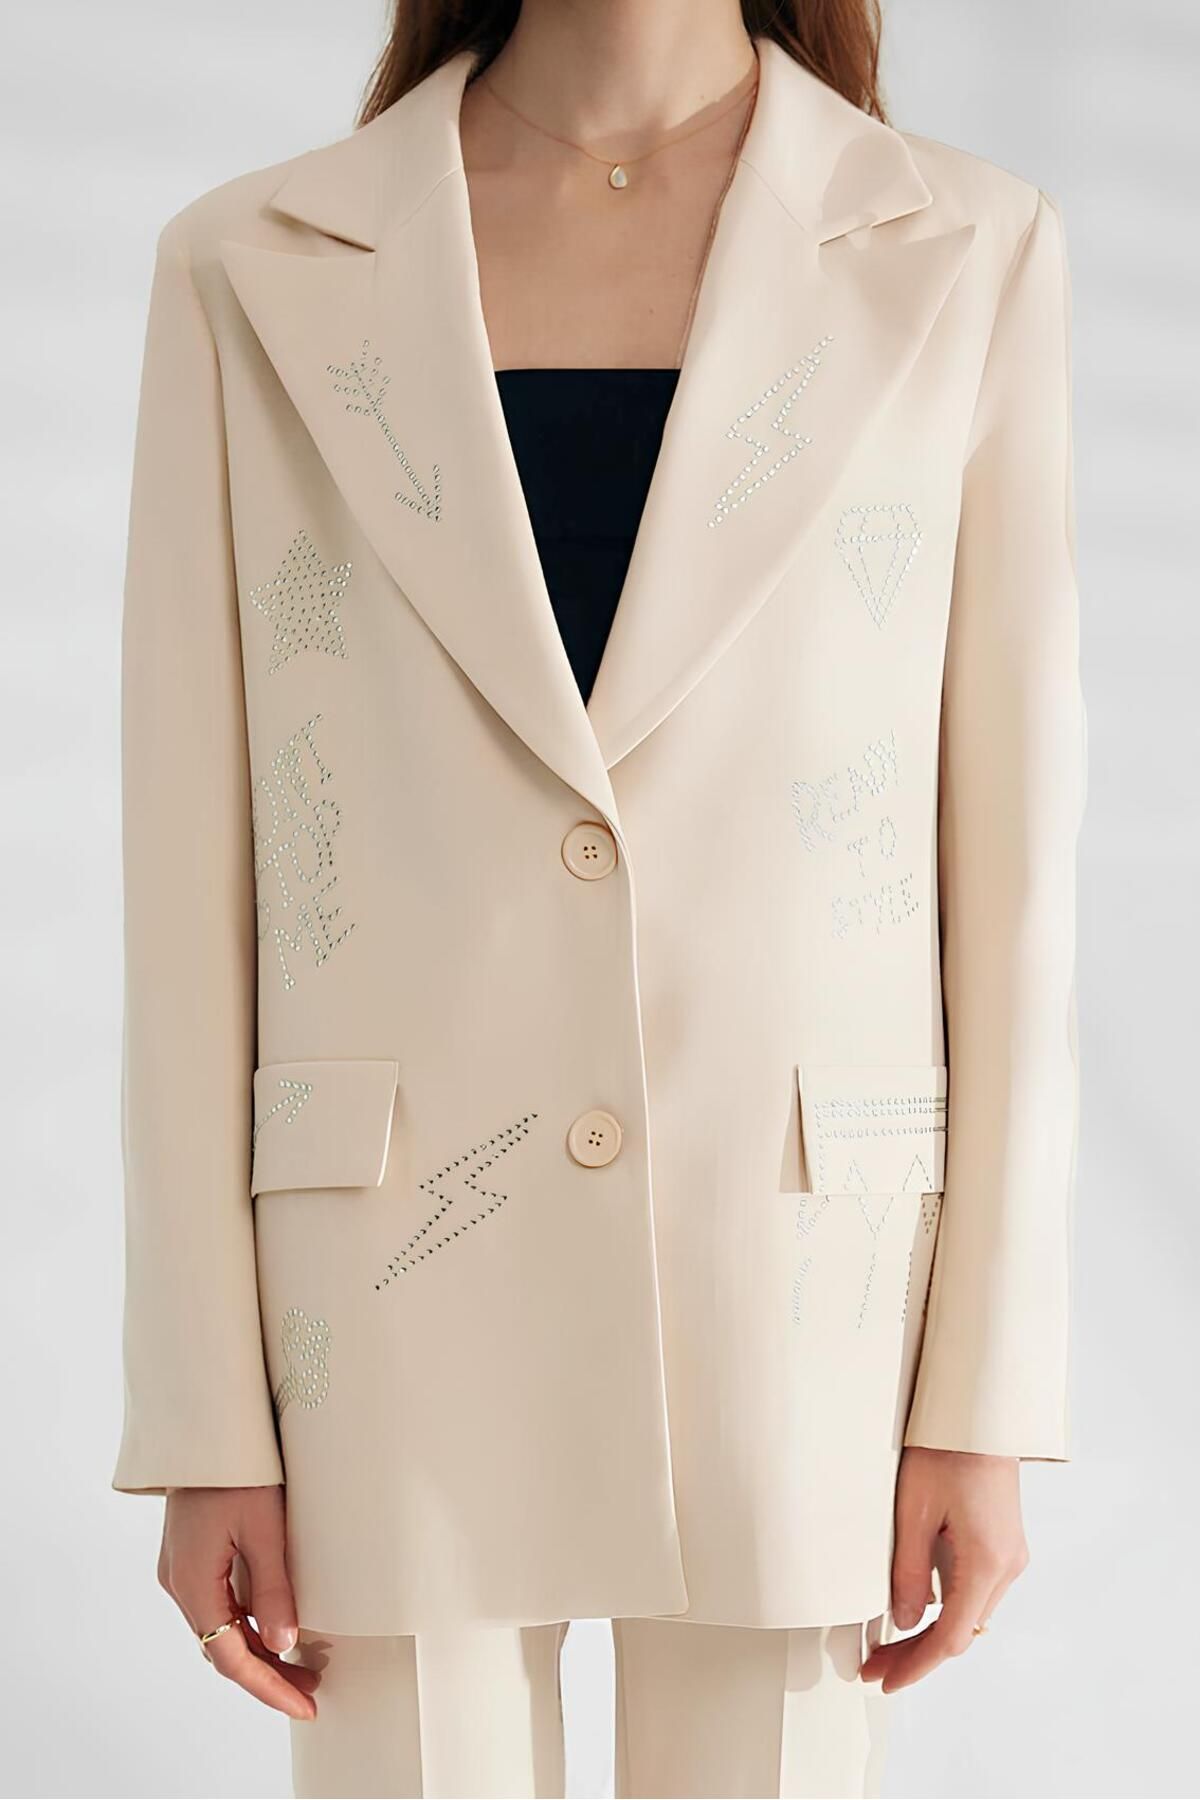 CYU Desenli Taşlı Astarlı Blazer Oversize Kadın Ceket